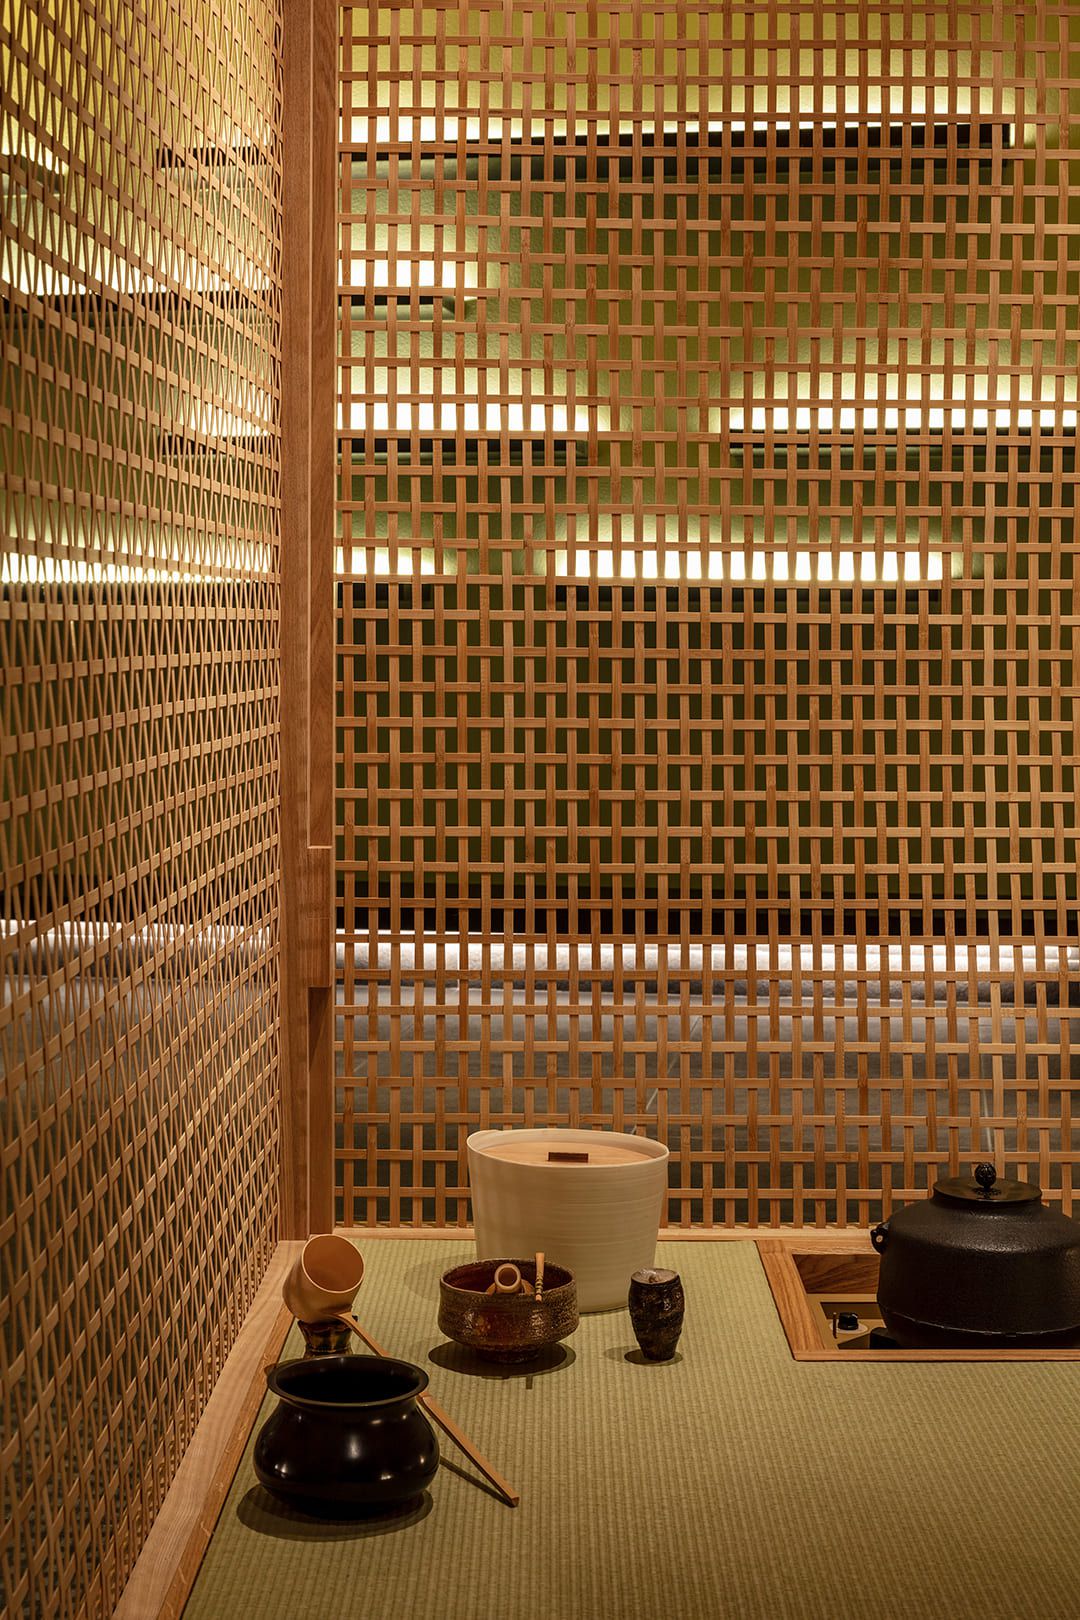 光の扱い、オブジェの位置など、茶道を例とする配置の精緻さが表現されている茶室